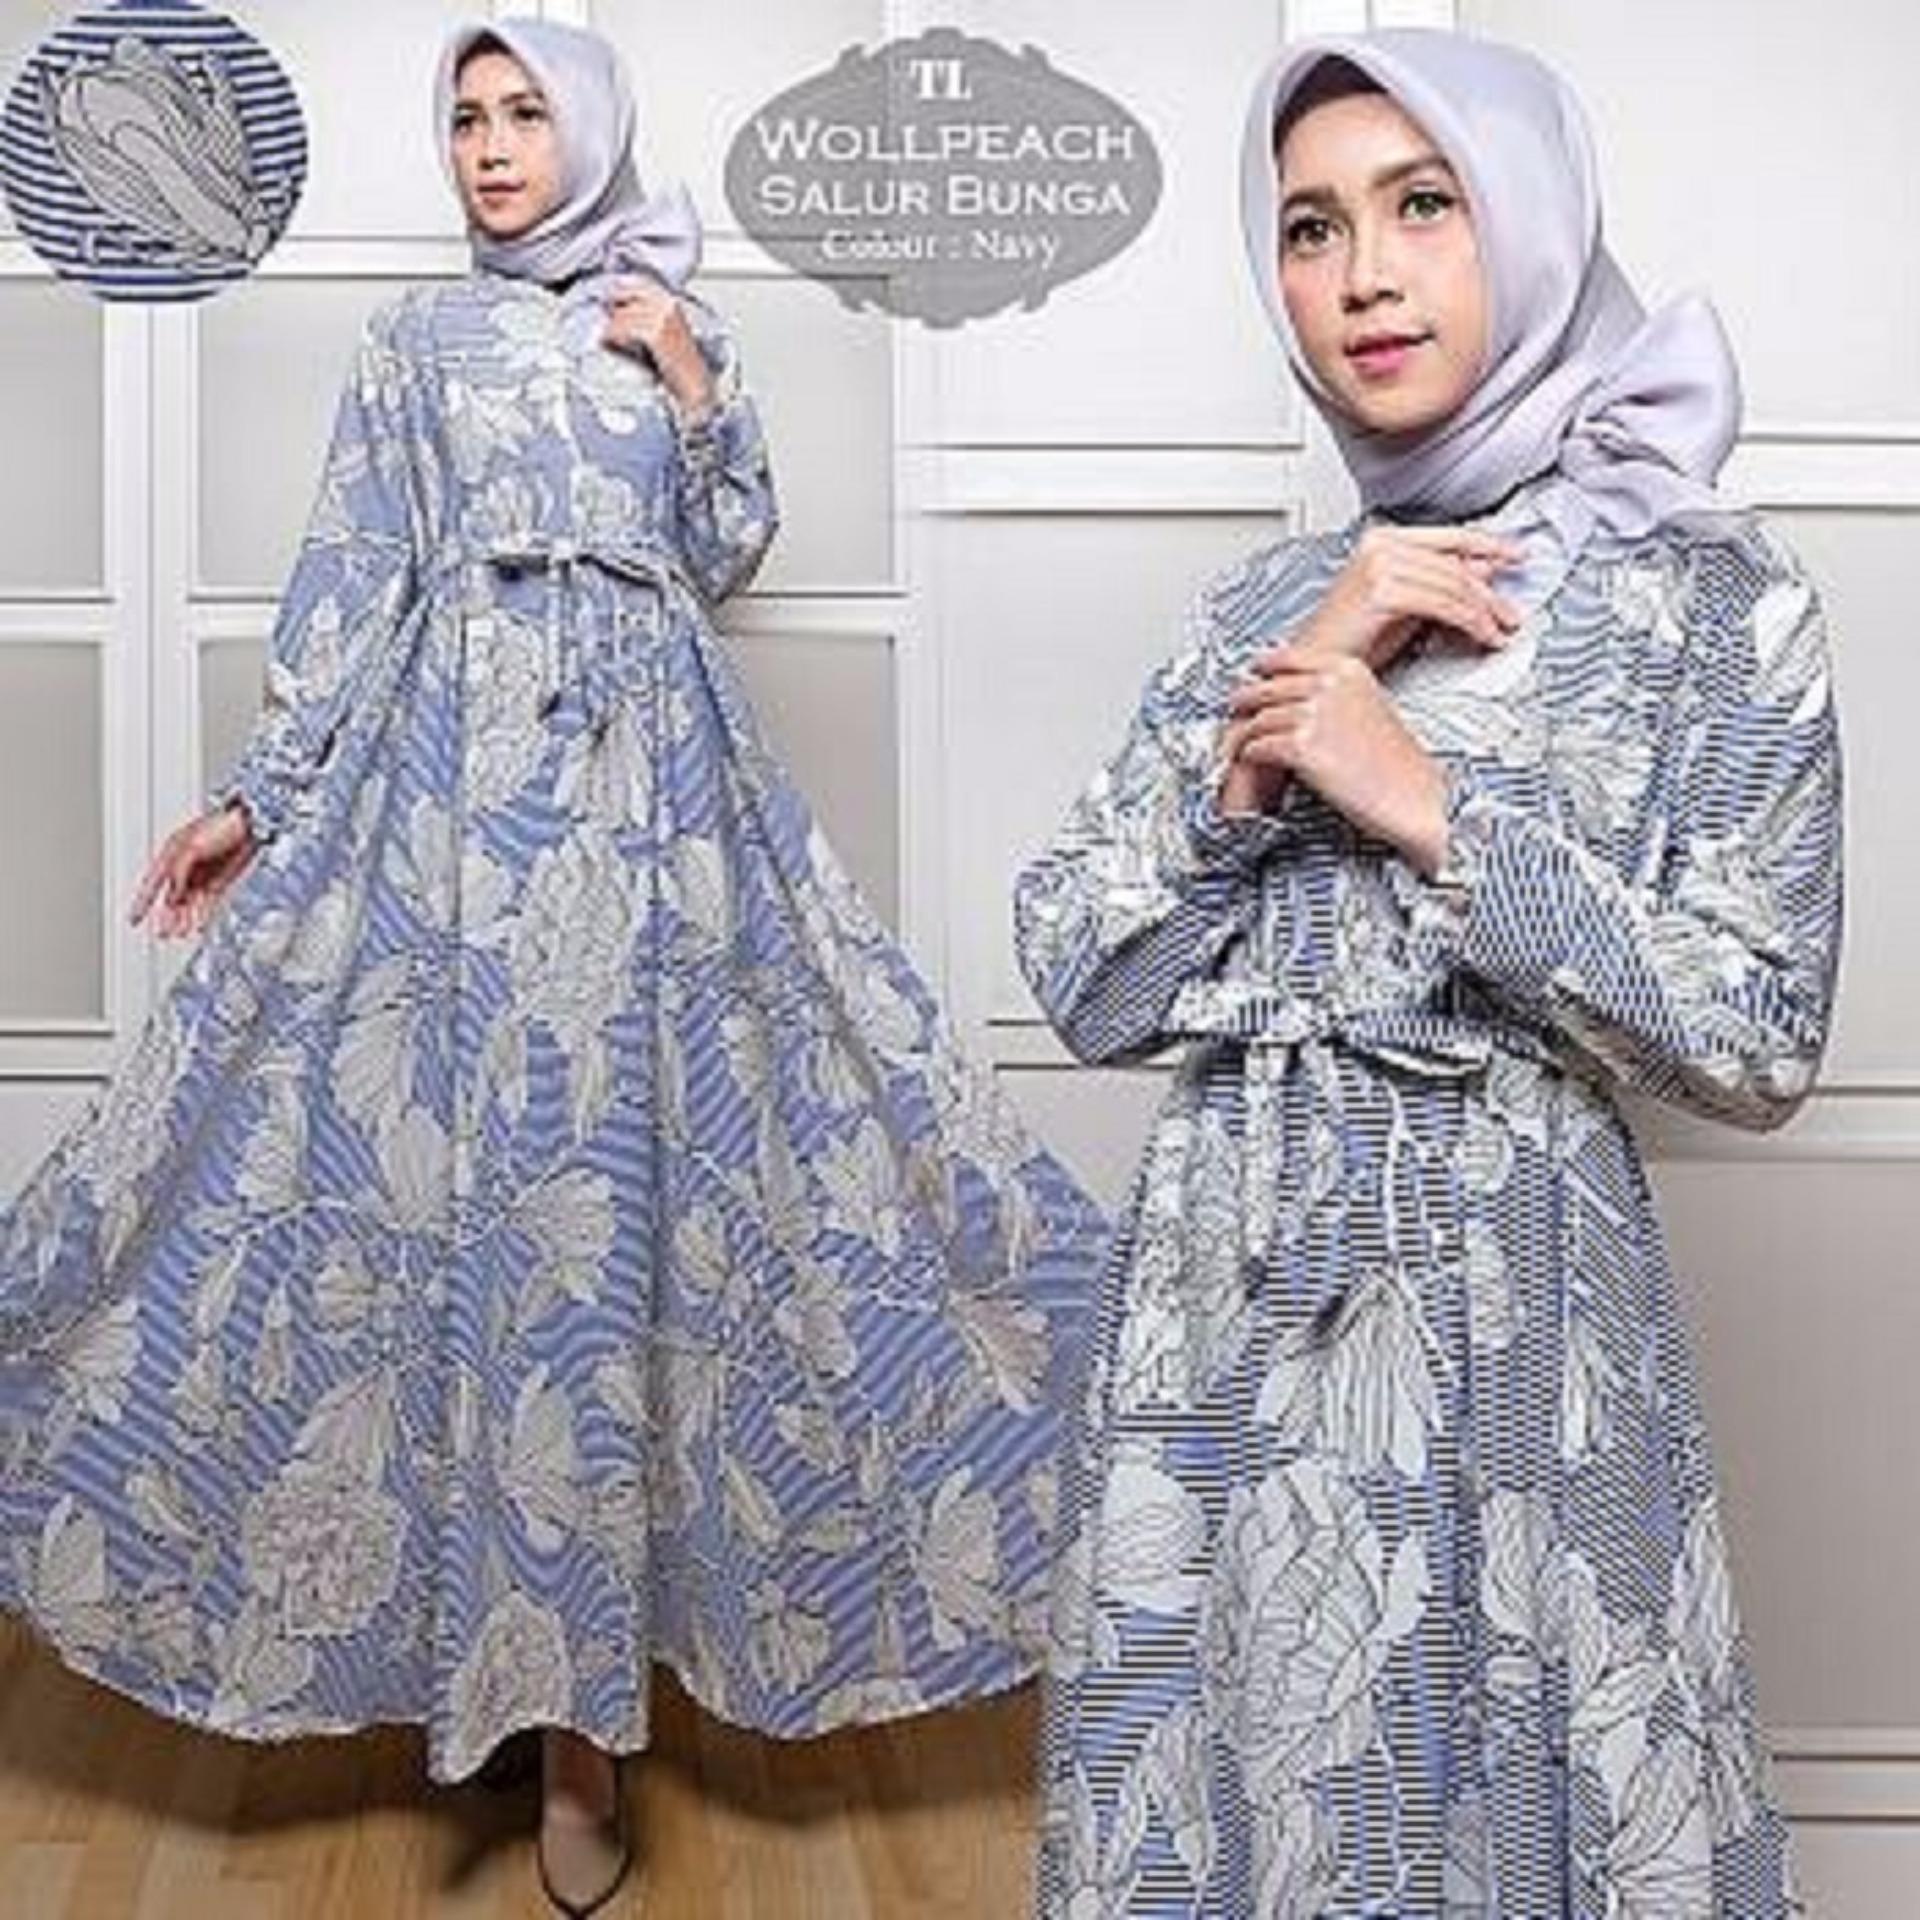 Afifahstore Gamis Syari Muslim Wanita Busui Gaun Muslimah Maxi Dress Lengan Panjang Wollpeach